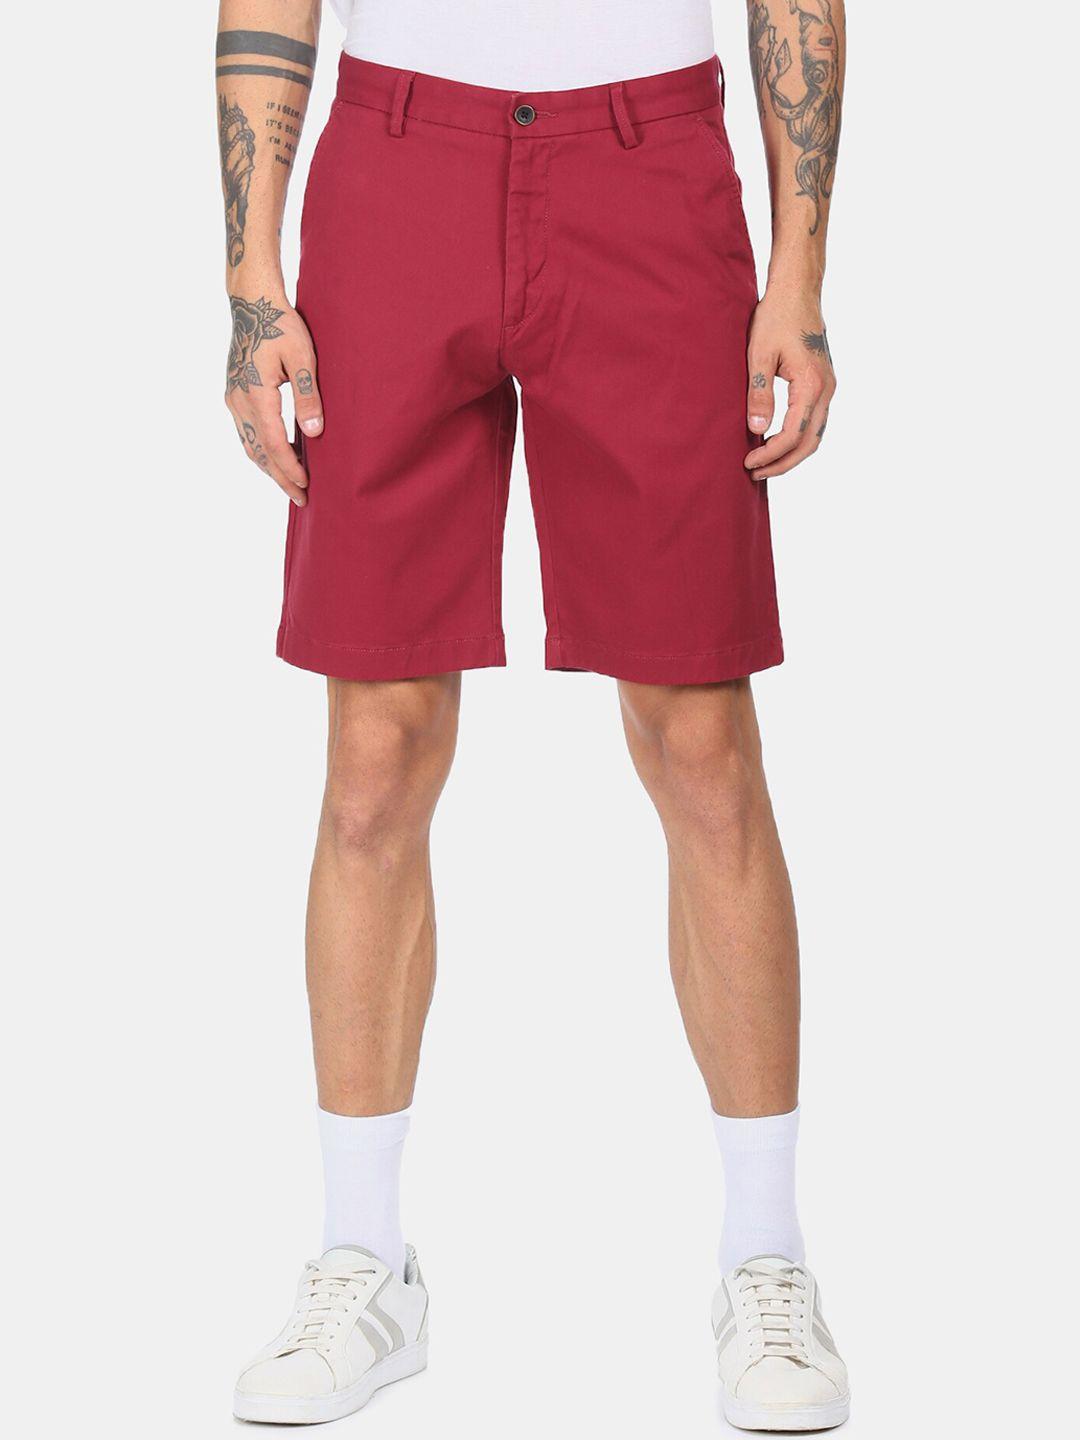 arrow-sport-men-red-regular-mid-rise-solid-shorts